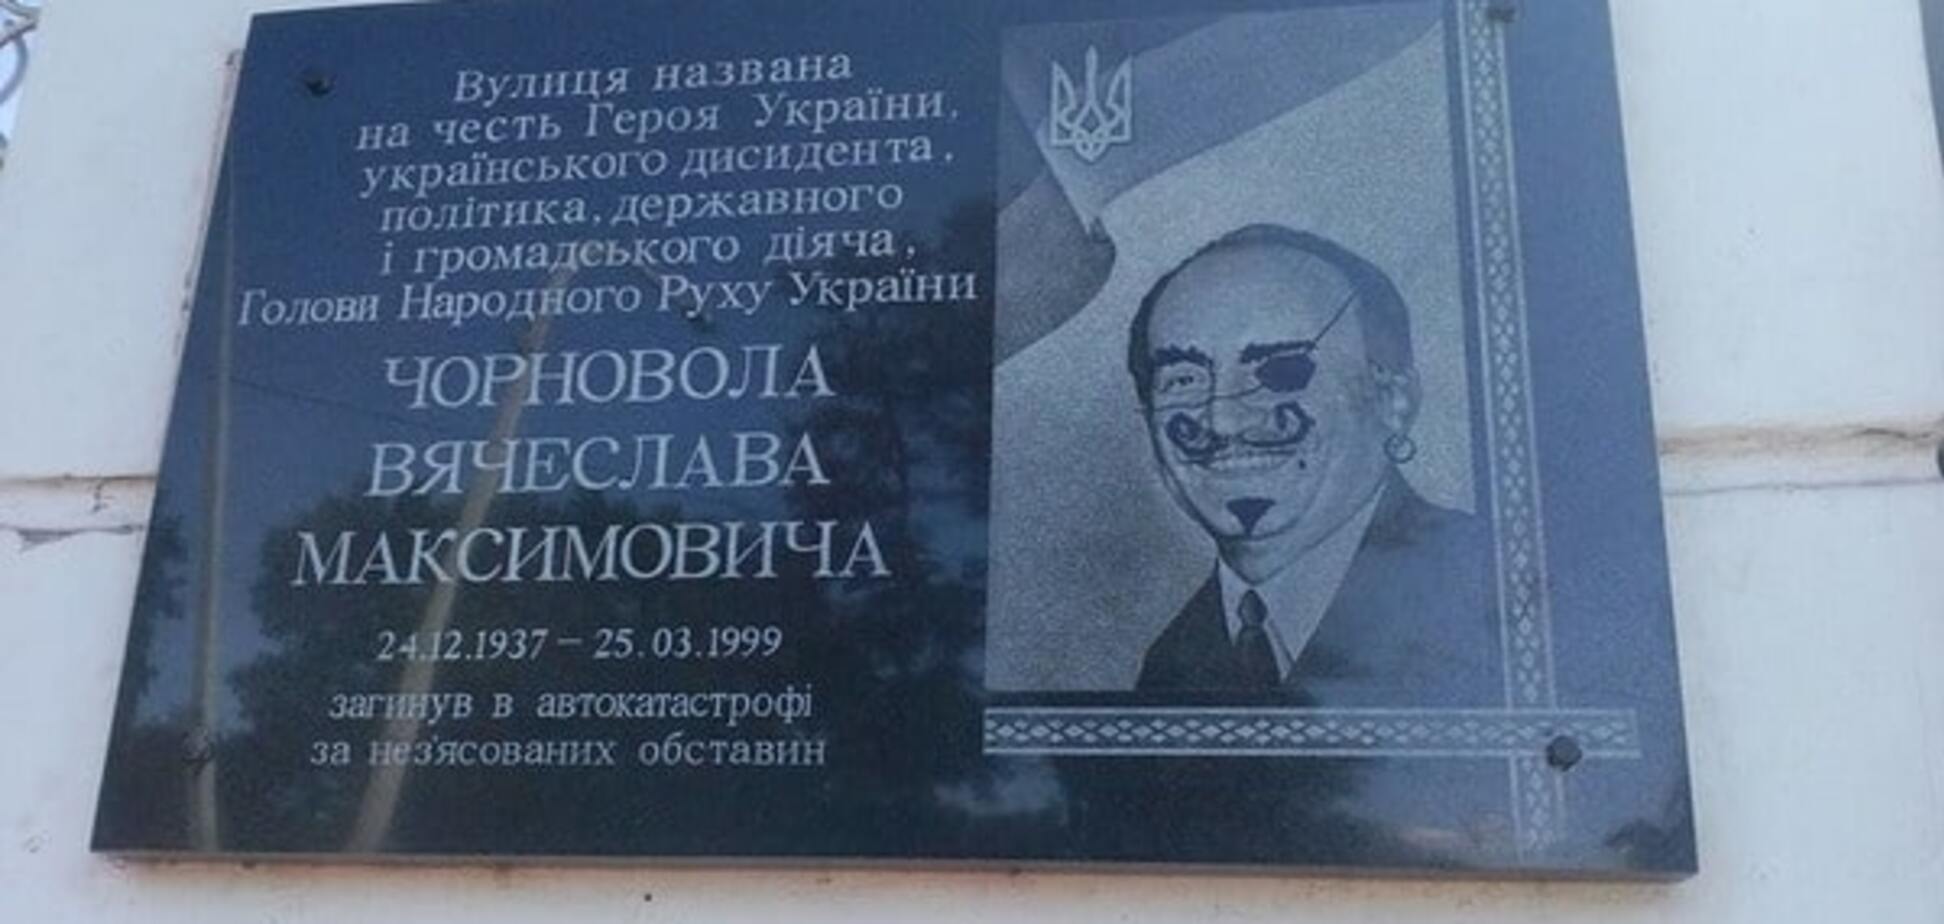 На Днепропетровщине осквернили мемориальную доску Чорновилу